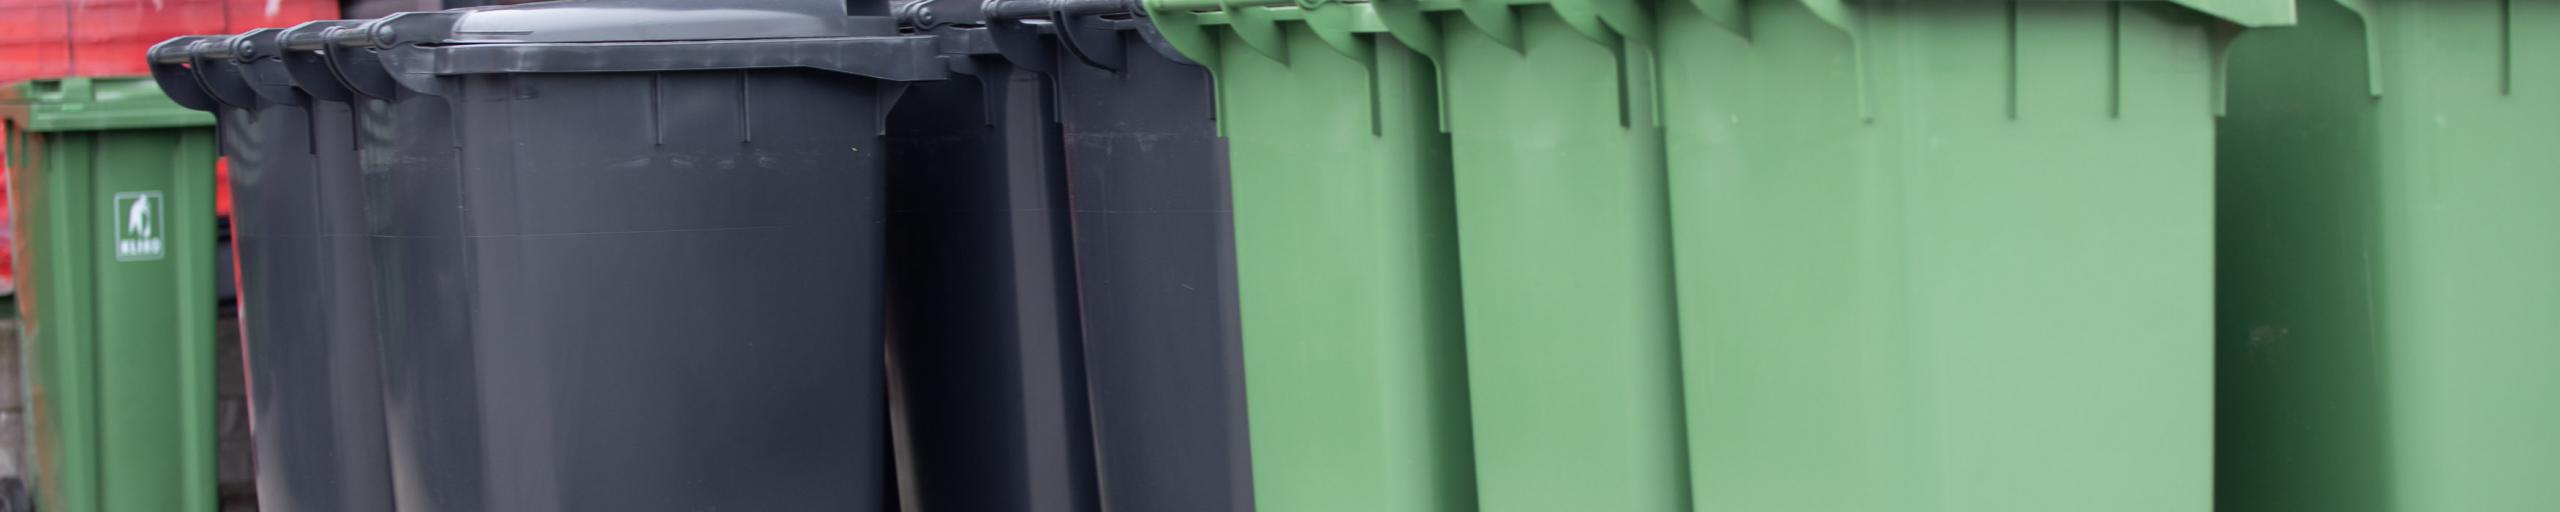 Groene en grijze containers op het afvalbrengstation